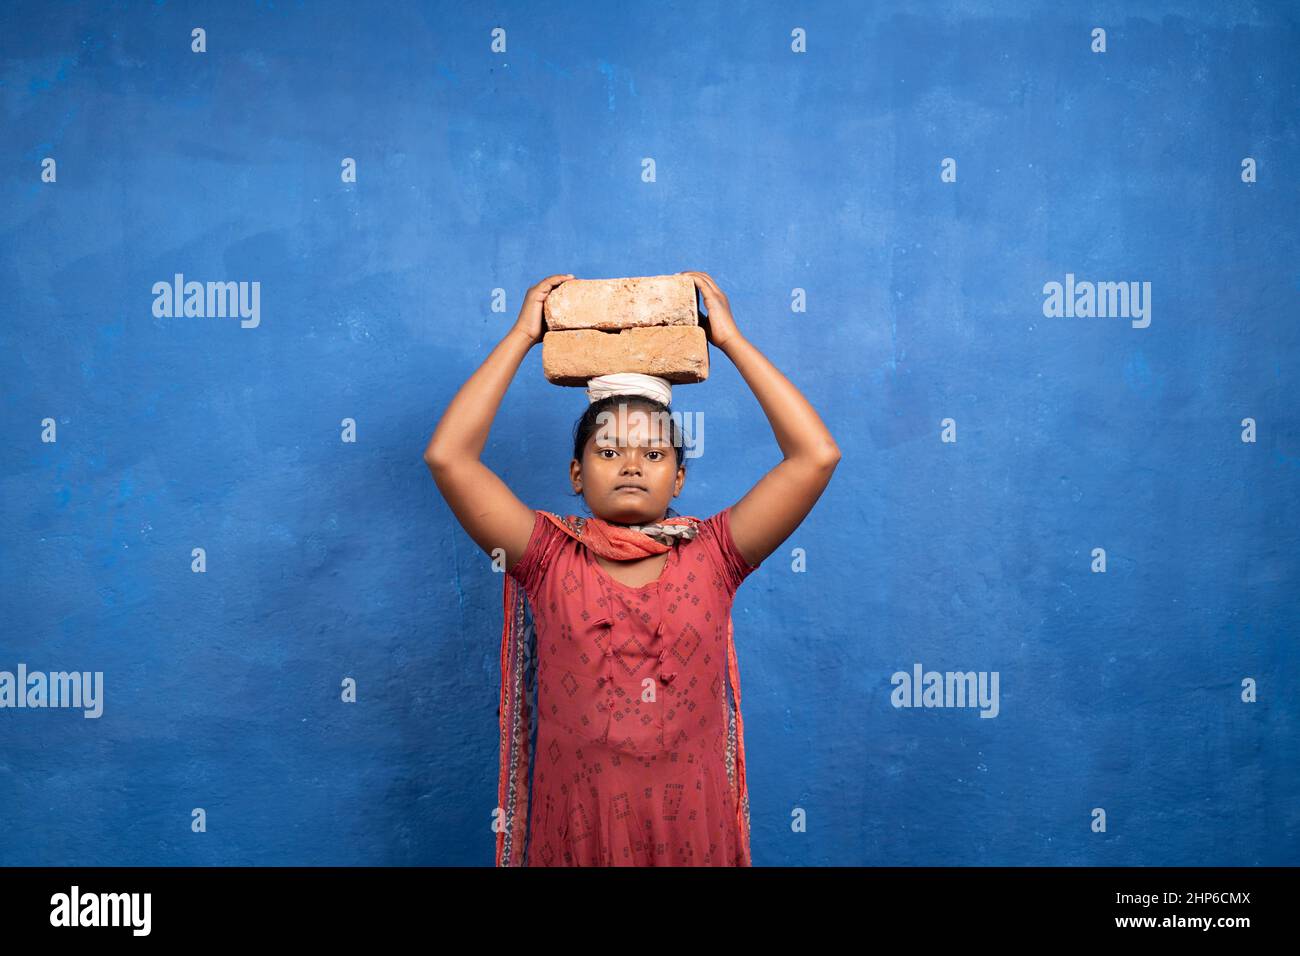 Junges Mädchen, das Steine auf dem Kopf hält, indem es die Kamera mit dem Kopierraum betrachtet - Konzept von Kinderarbeit, Armut und Unwissenheit. Stockfoto